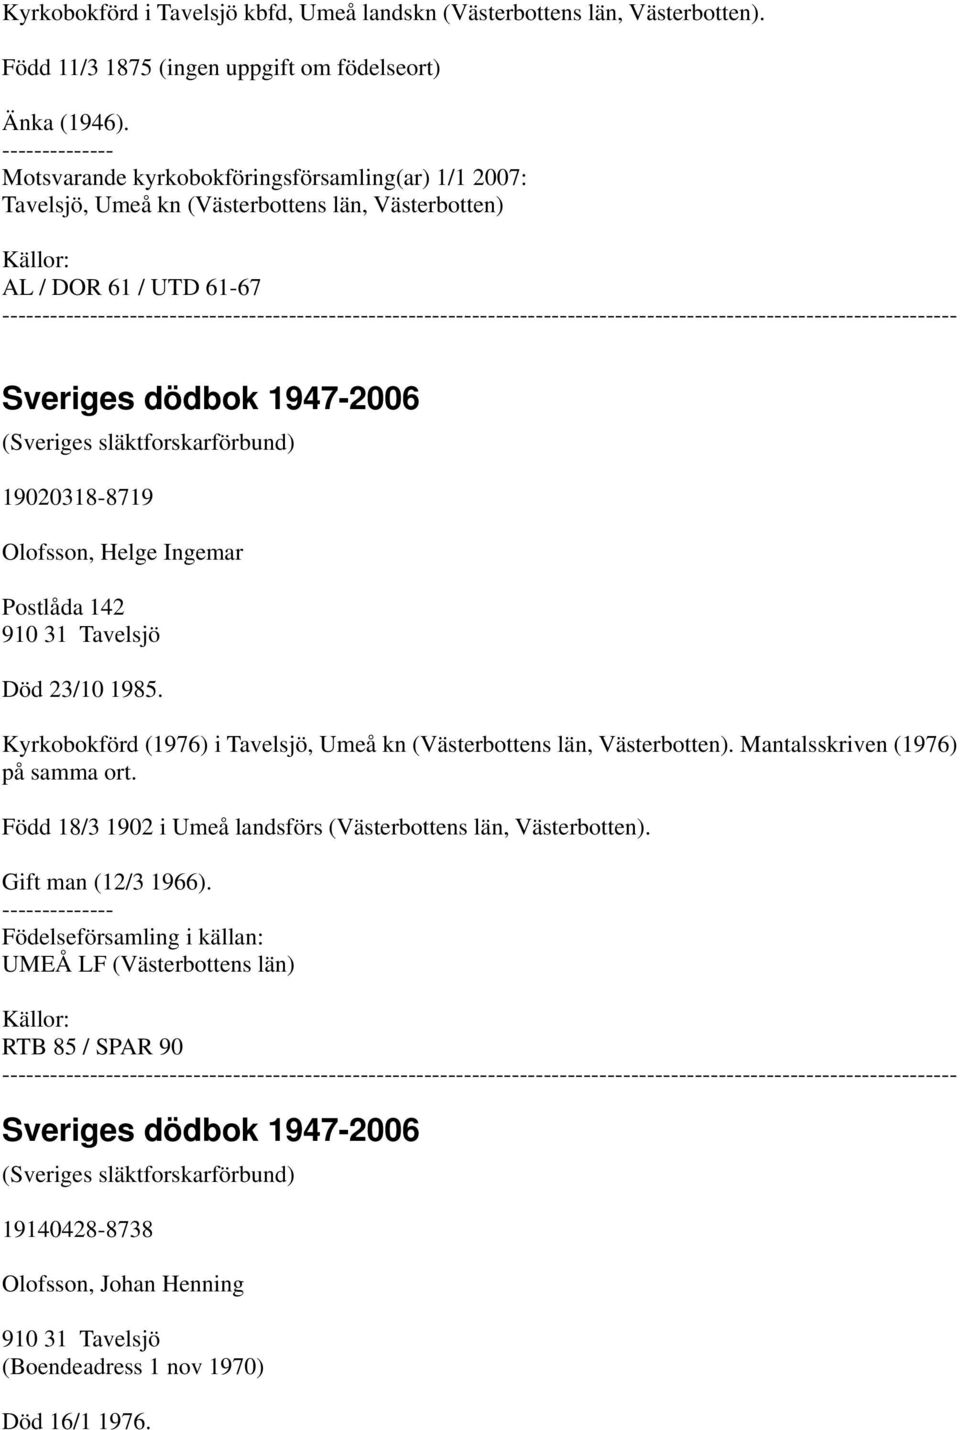 Olofsson, Helge Ingemar Postlåda 142 910 31 Tavelsjö Död 23/10 1985. Kyrkobokförd (1976) i Tavelsjö, Umeå kn (Västerbottens län, Västerbotten). Mantalsskriven (1976) på samma ort.